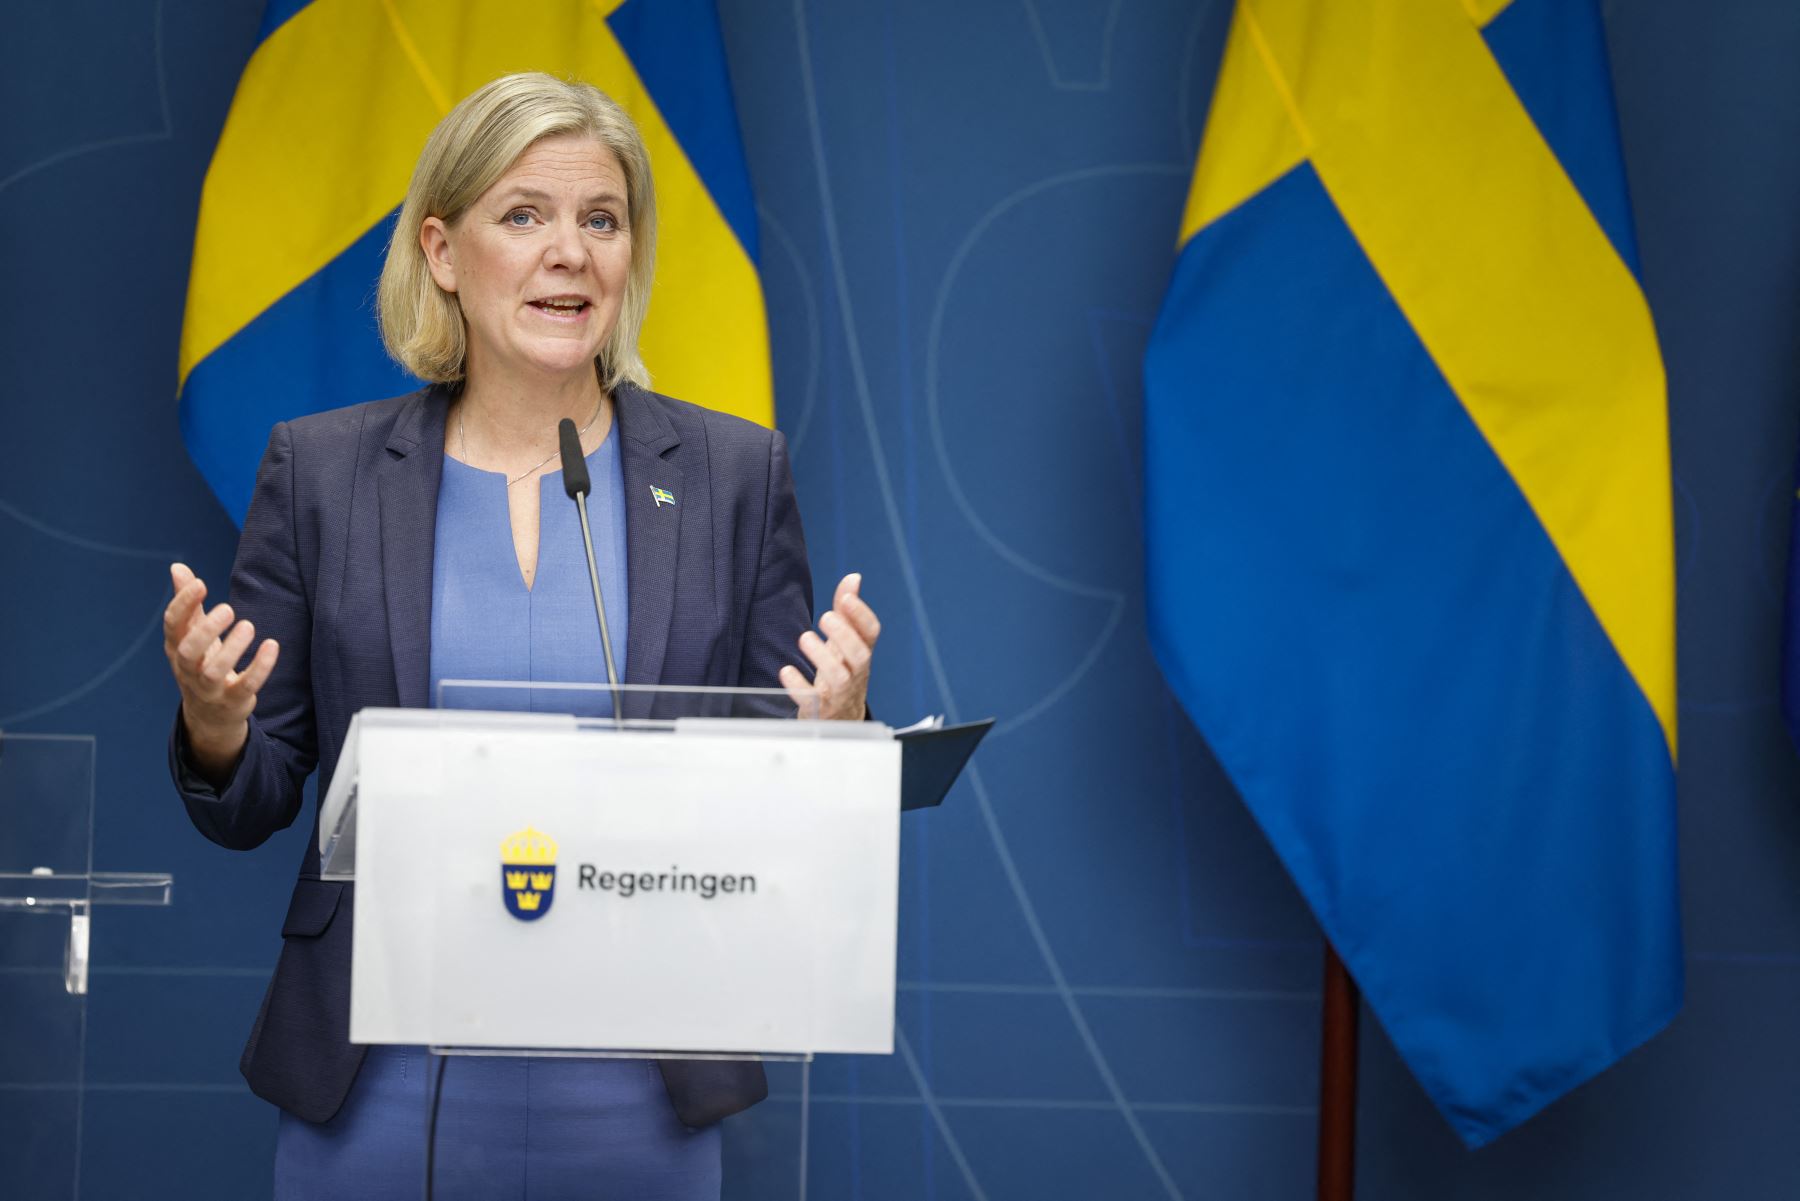 Los medios suecos rumorean con la posibilidad de que conservadores y democristianos formen un ejecutivo de minoría. Foto: AFP